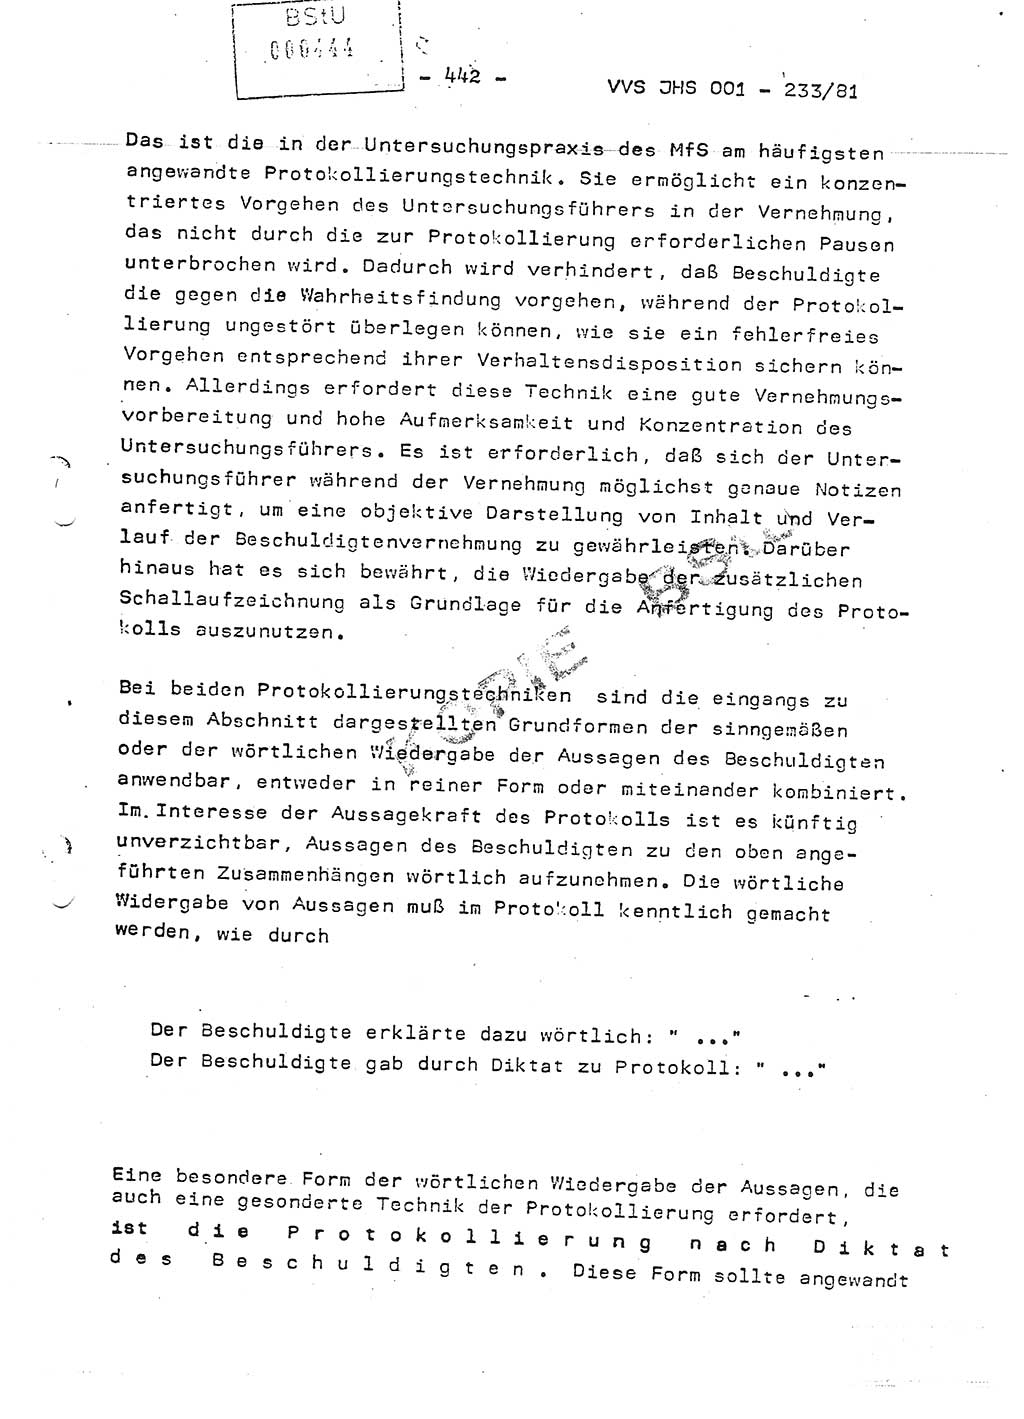 Dissertation Oberstleutnant Horst Zank (JHS), Oberstleutnant Dr. Karl-Heinz Knoblauch (JHS), Oberstleutnant Gustav-Adolf Kowalewski (HA Ⅸ), Oberstleutnant Wolfgang Plötner (HA Ⅸ), Ministerium für Staatssicherheit (MfS) [Deutsche Demokratische Republik (DDR)], Juristische Hochschule (JHS), Vertrauliche Verschlußsache (VVS) o001-233/81, Potsdam 1981, Blatt 442 (Diss. MfS DDR JHS VVS o001-233/81 1981, Bl. 442)